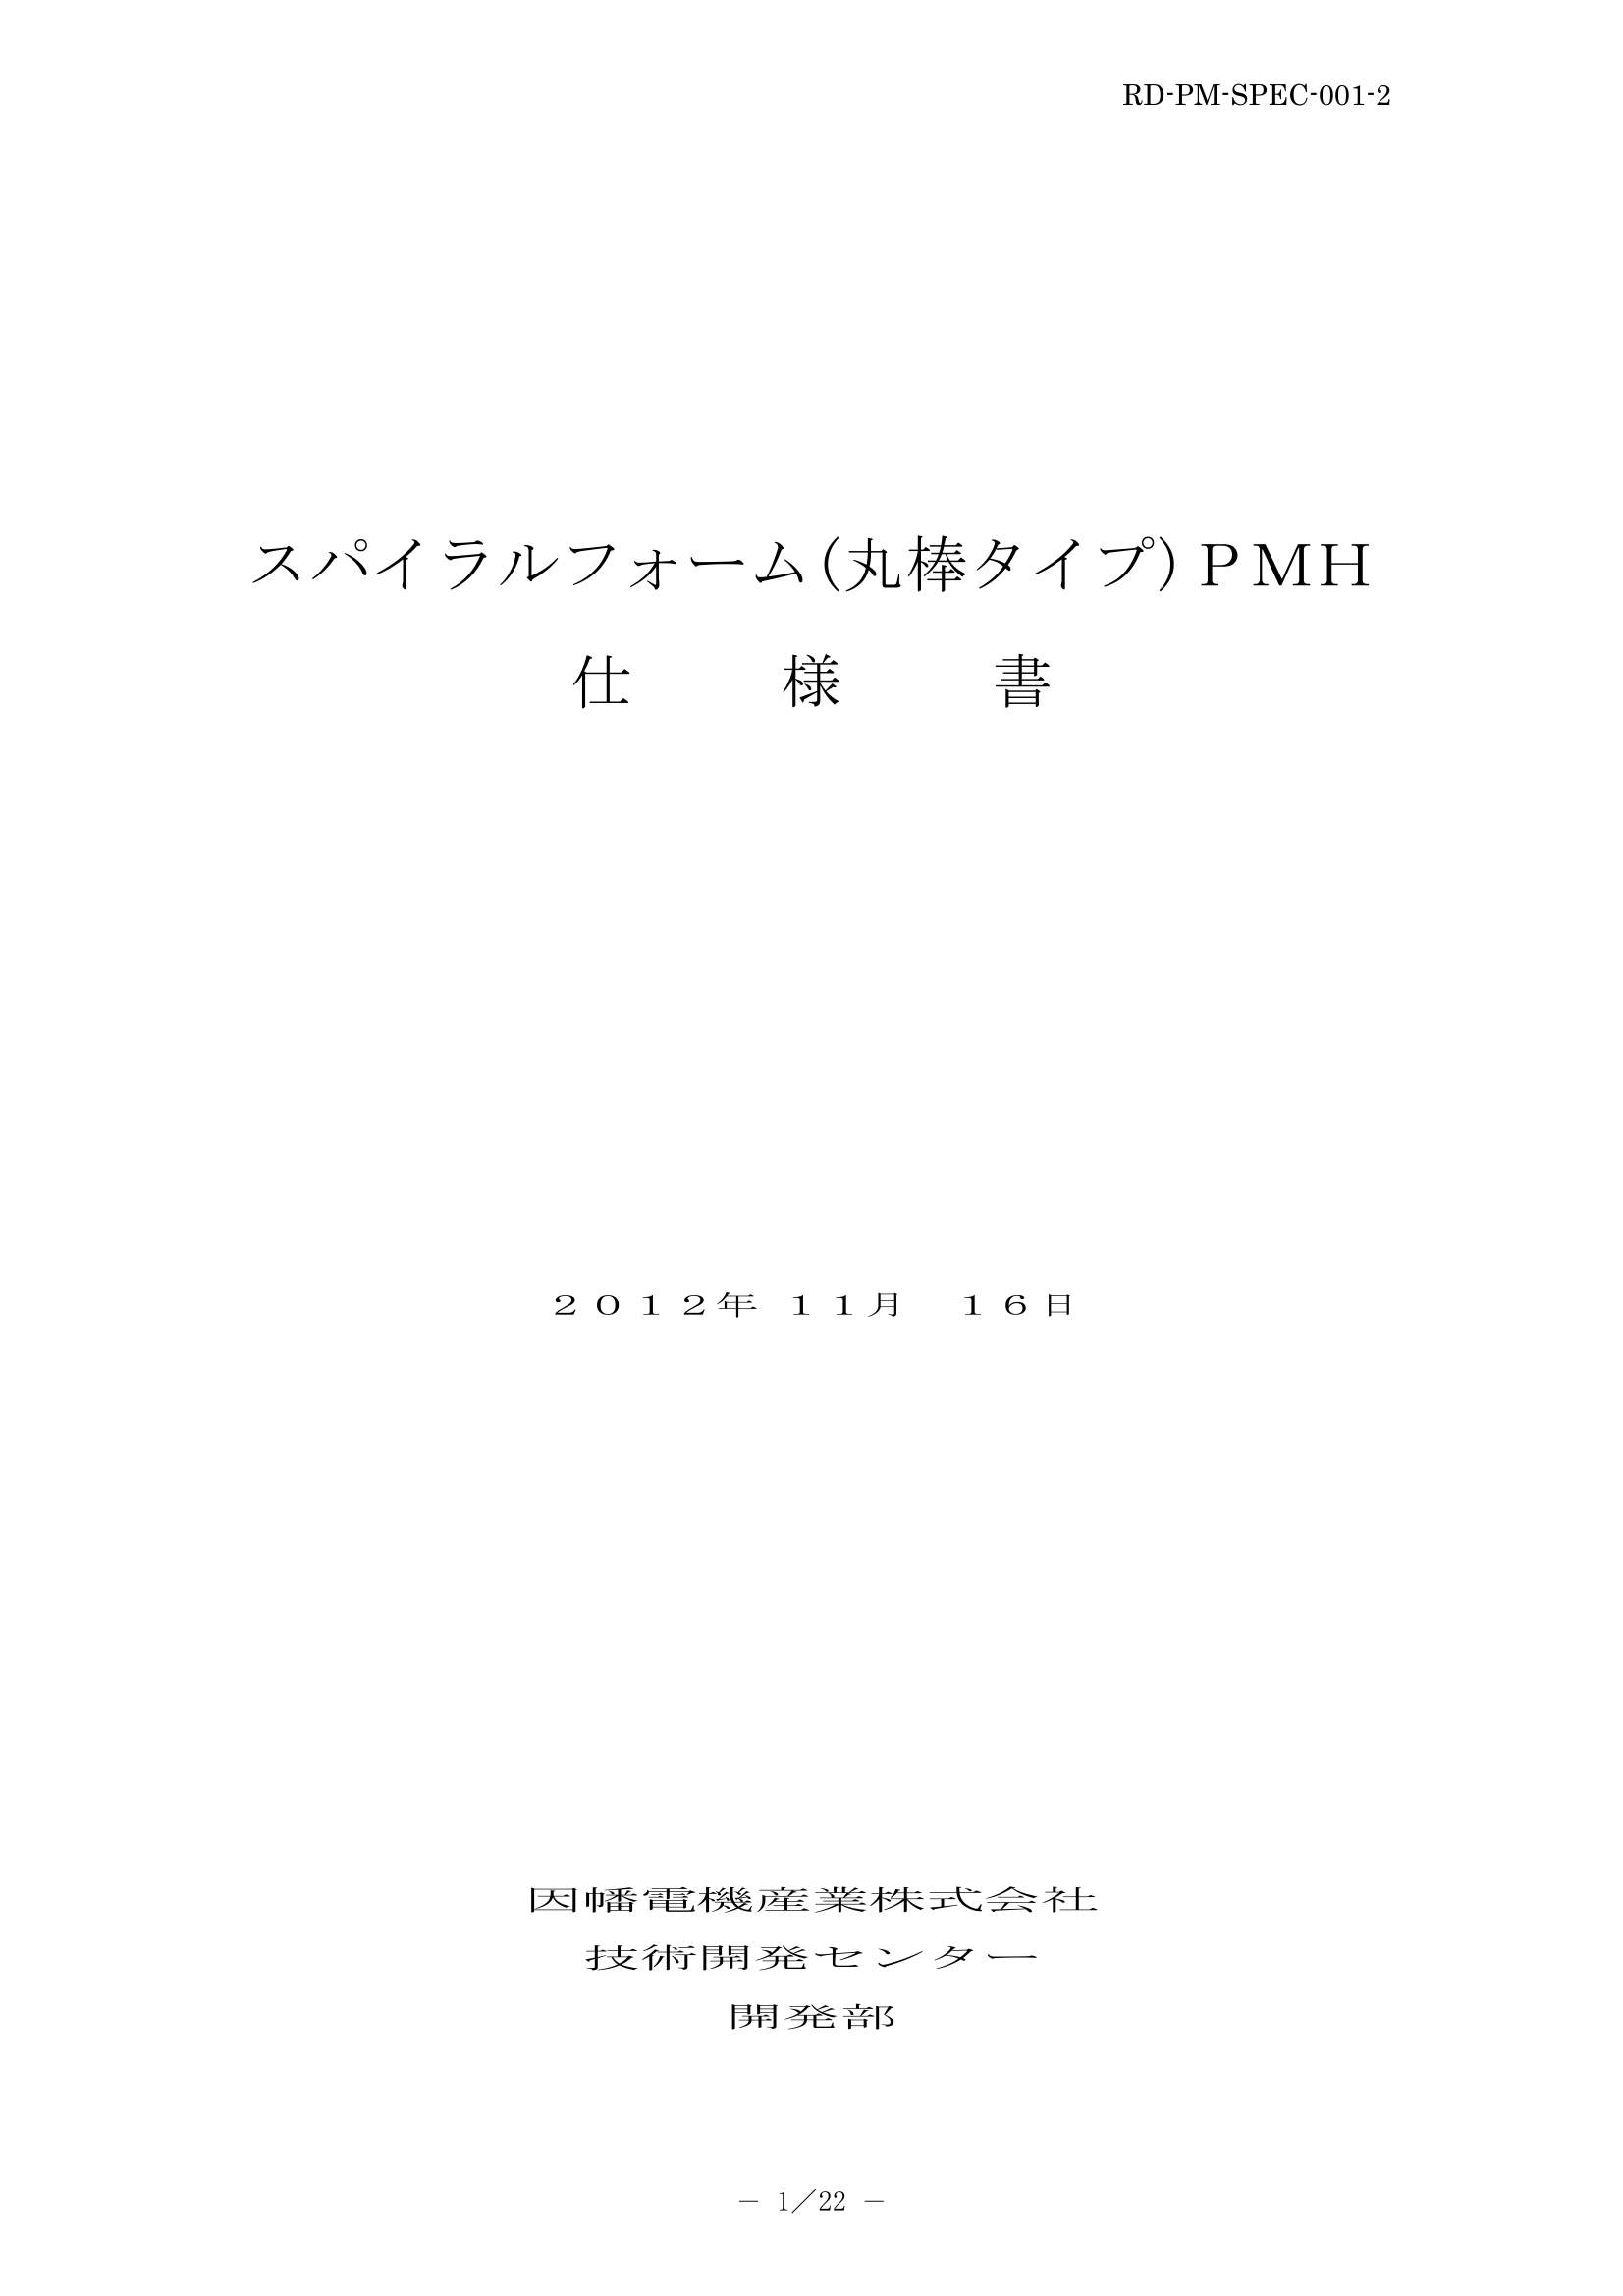 PMH_仕様書_20121119.pdf